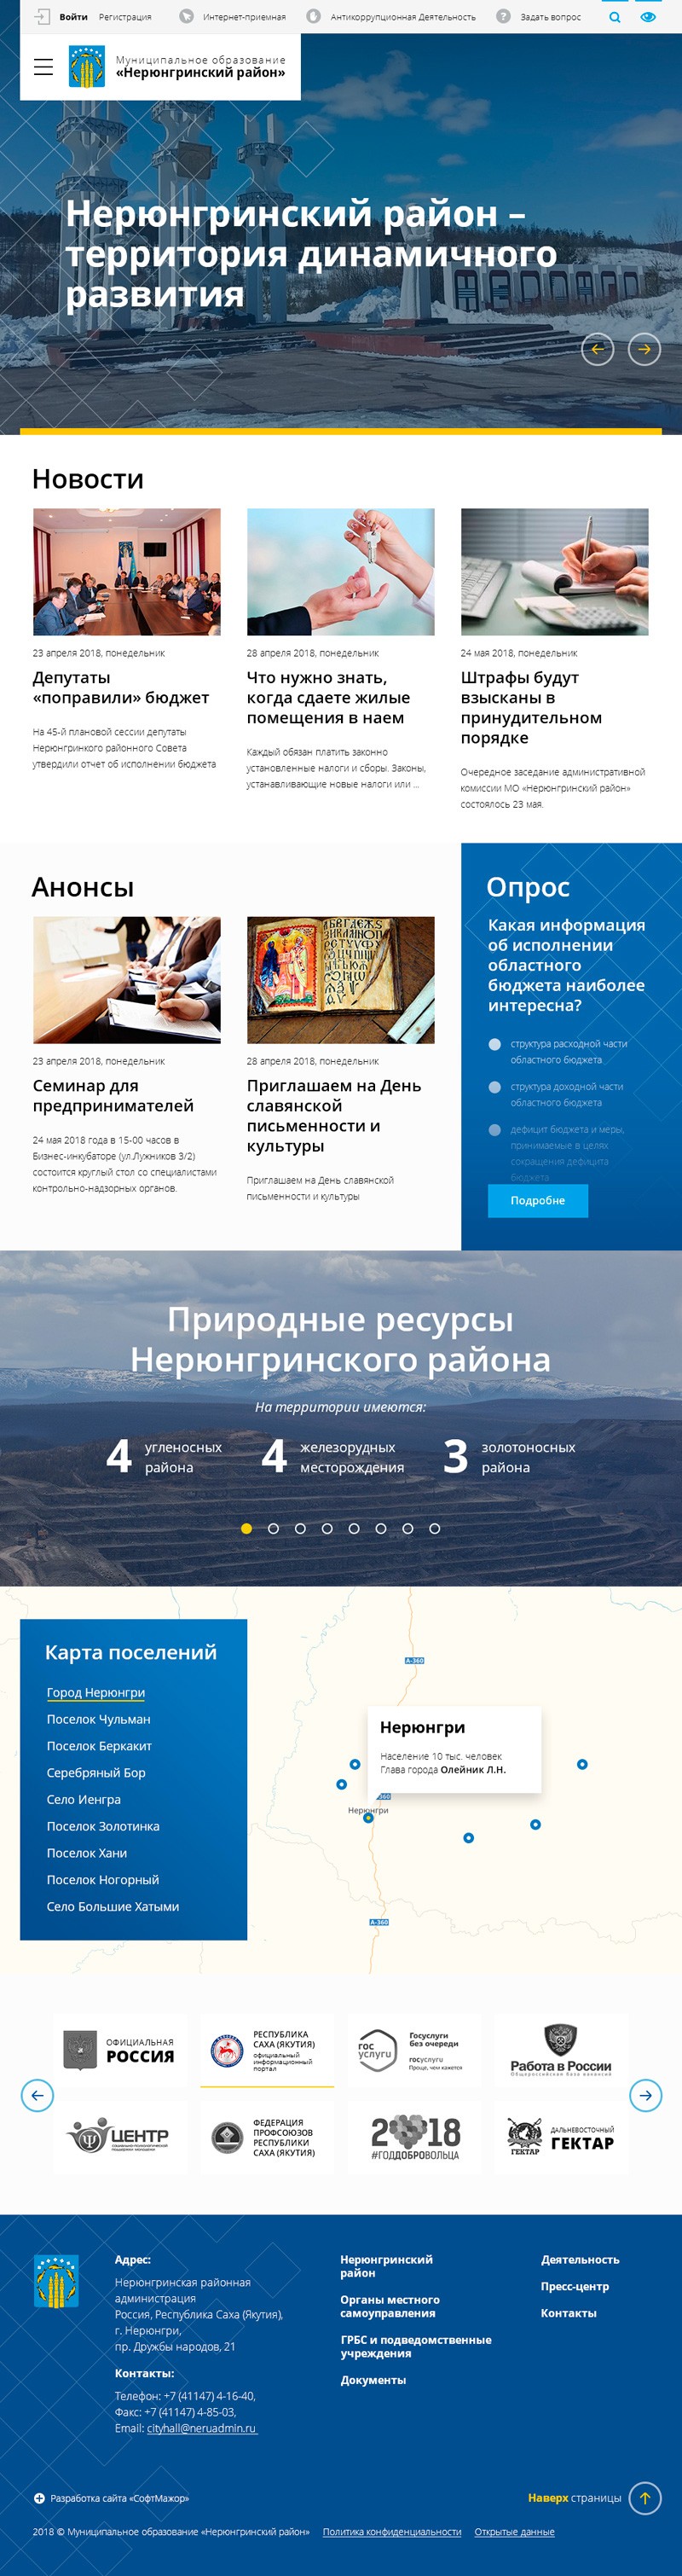 официальный сайт нерюнгринской районной администрации